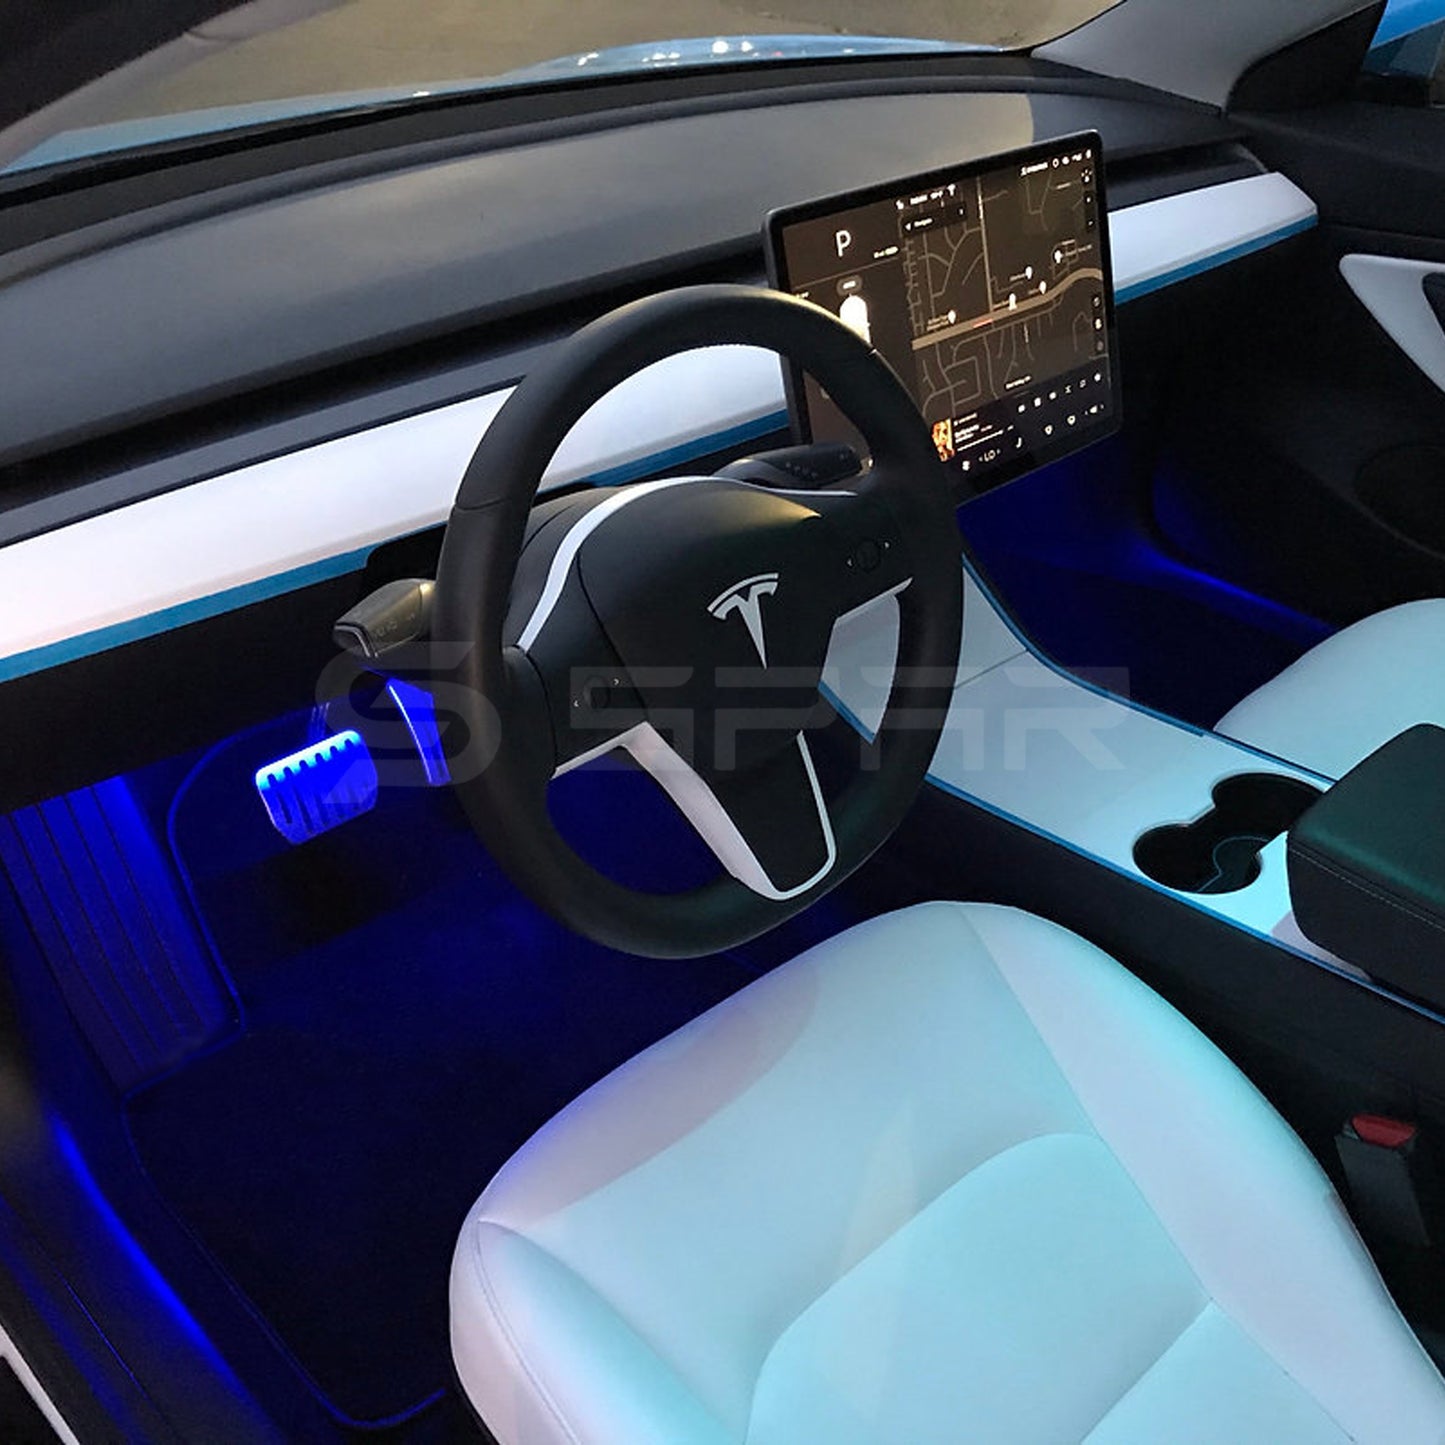 لمبات داخلية لون أزرق عالية السطوع لسيارة من نوع تيسلا الطراز (3/Y)